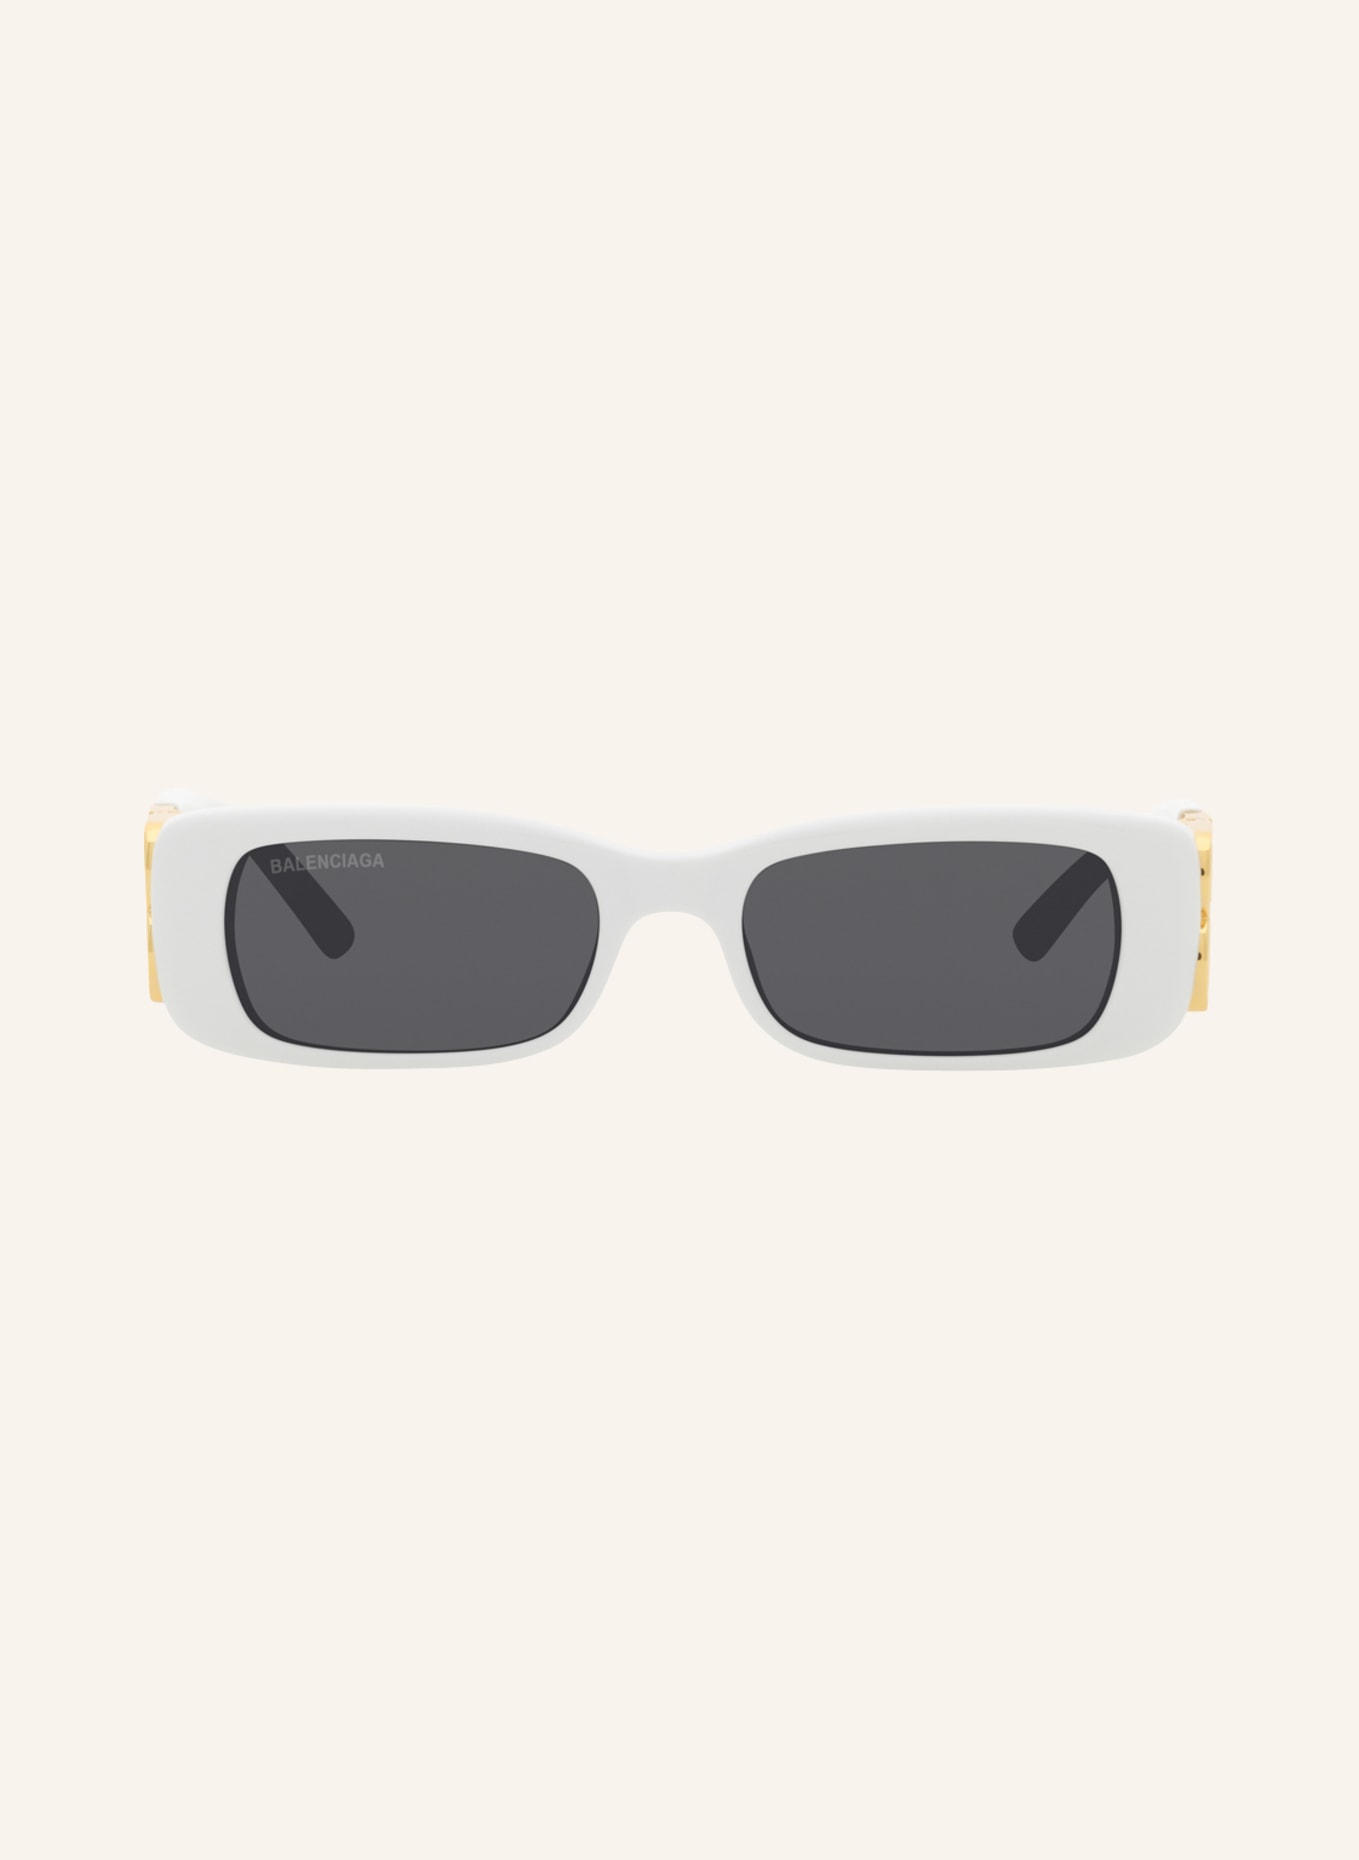 BALENCIAGA Sunglasses BB0096S, Color: 4800L1 - WHITE/ DARK GRAY (Image 2)